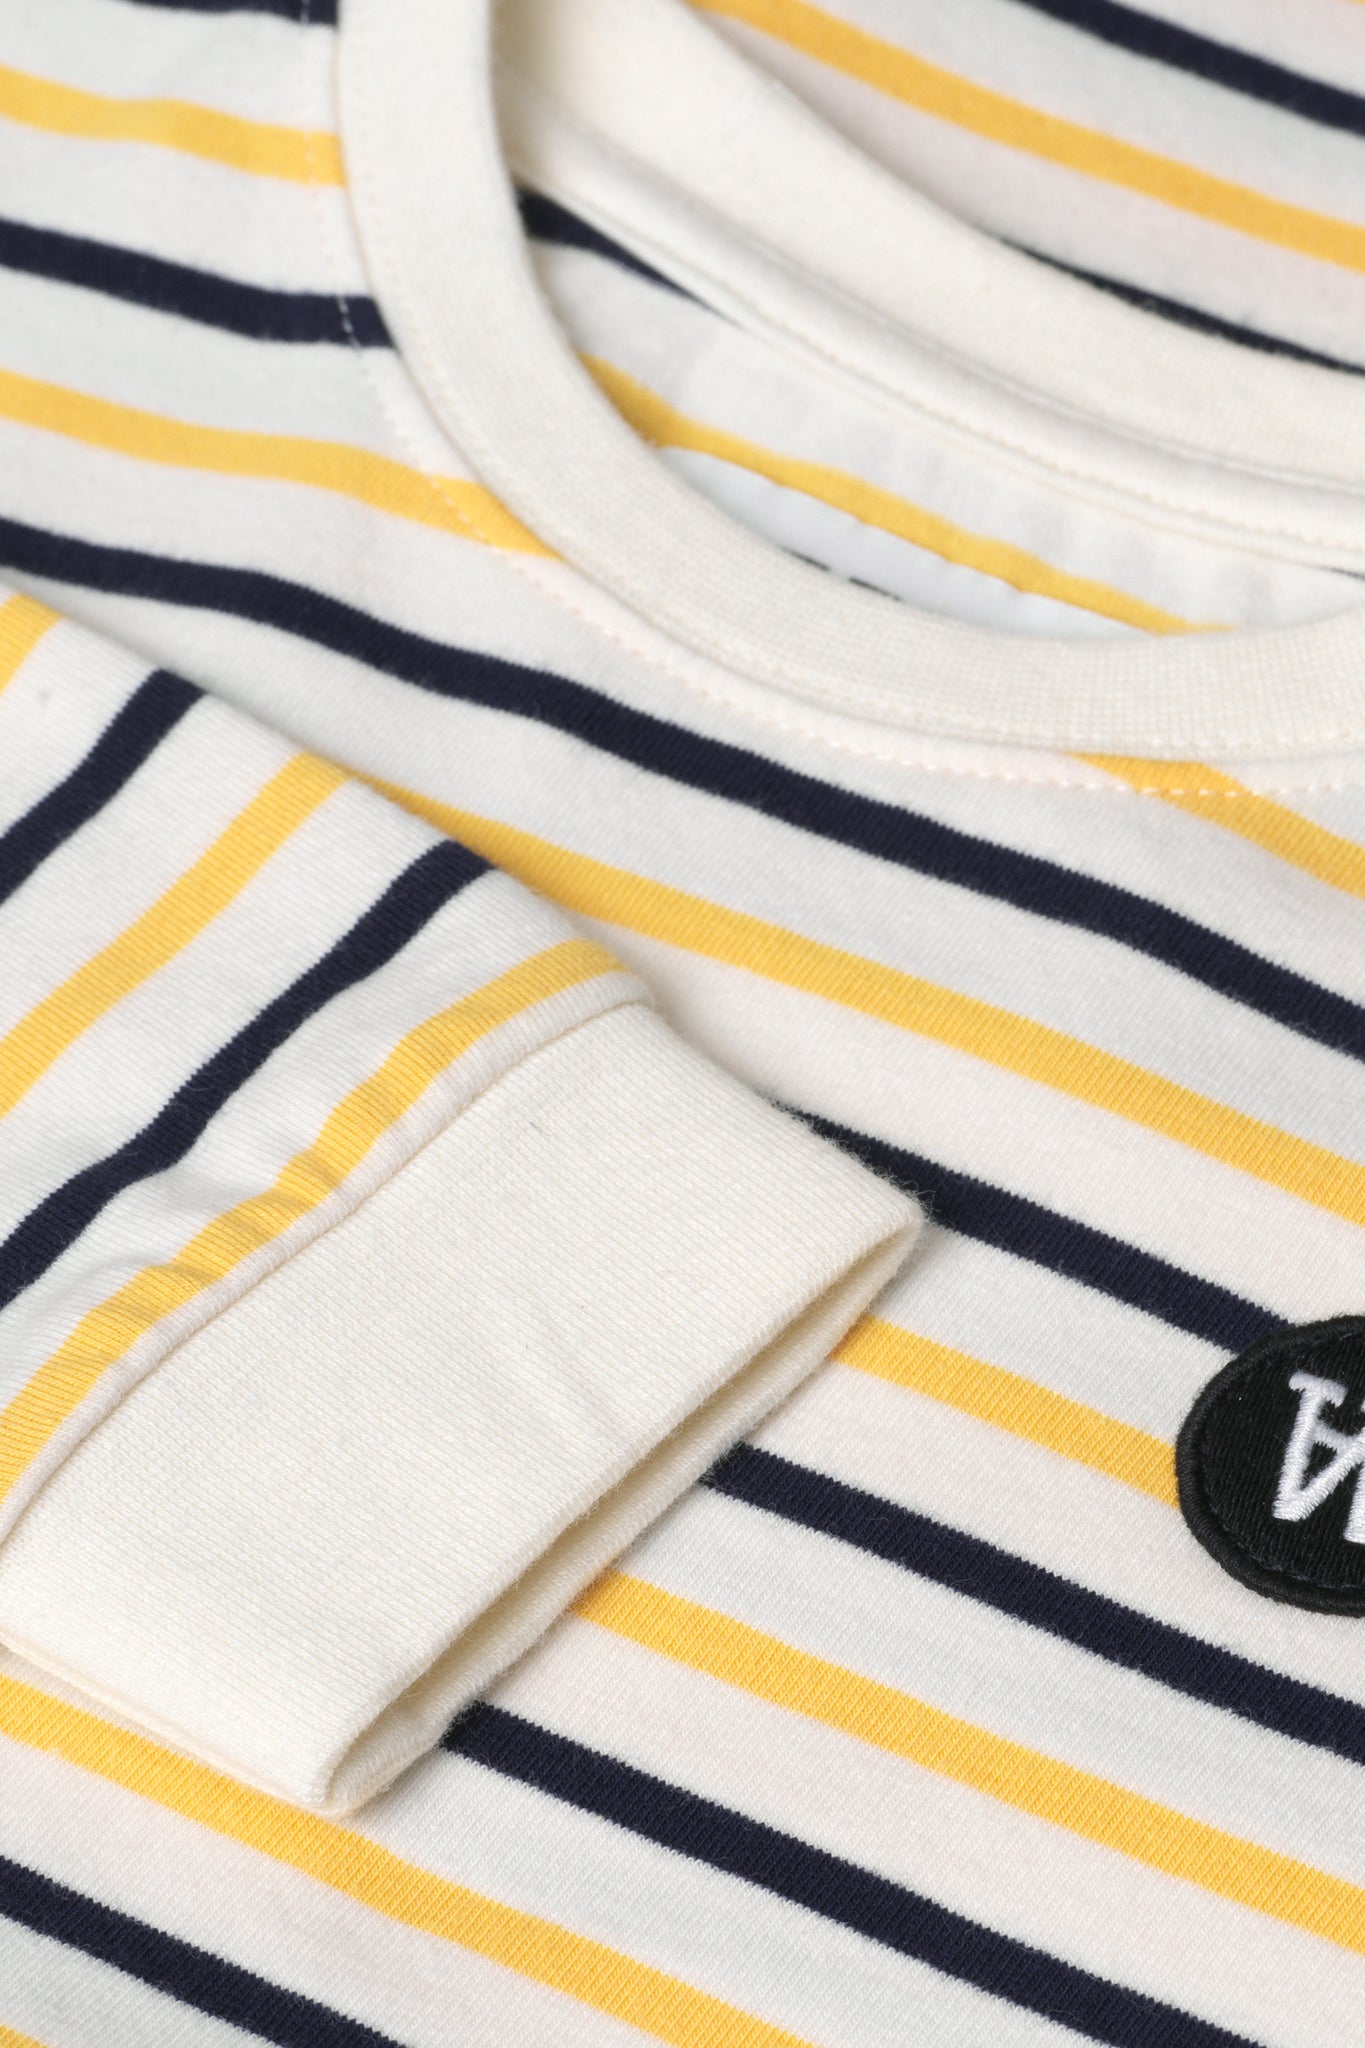 Off-white/yellow stripes